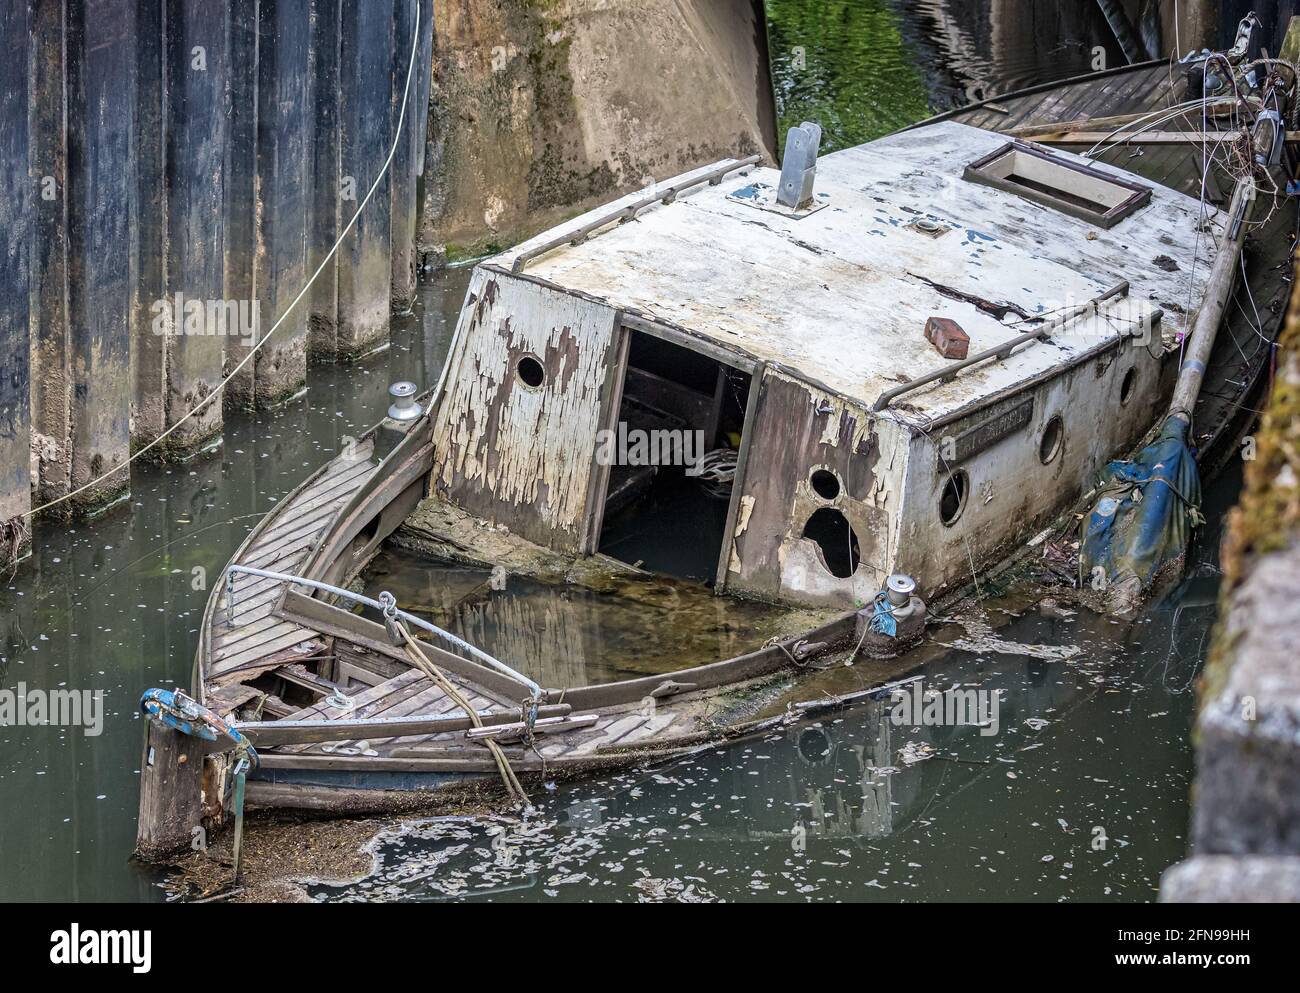 Cabine de croisière en bois abandonnée pourrie à moitié submergée dans la rivière - épave du navire Banque D'Images